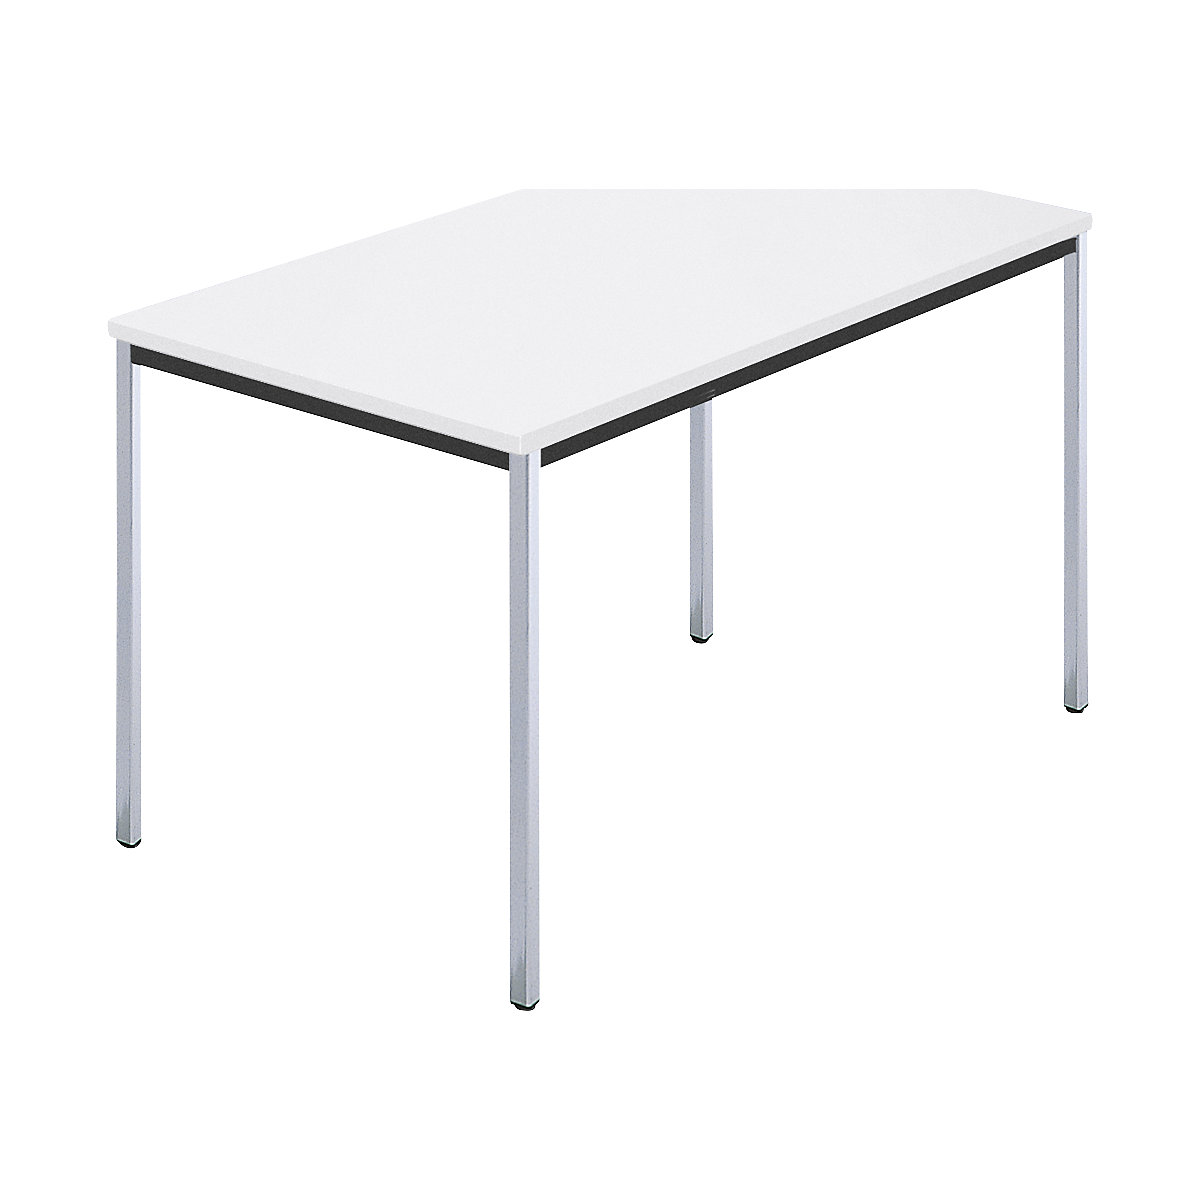 Rechthoekige tafel, met vierkante, verchroomde tafelpoten, b x d = 1200 x 800 mm, wit-5